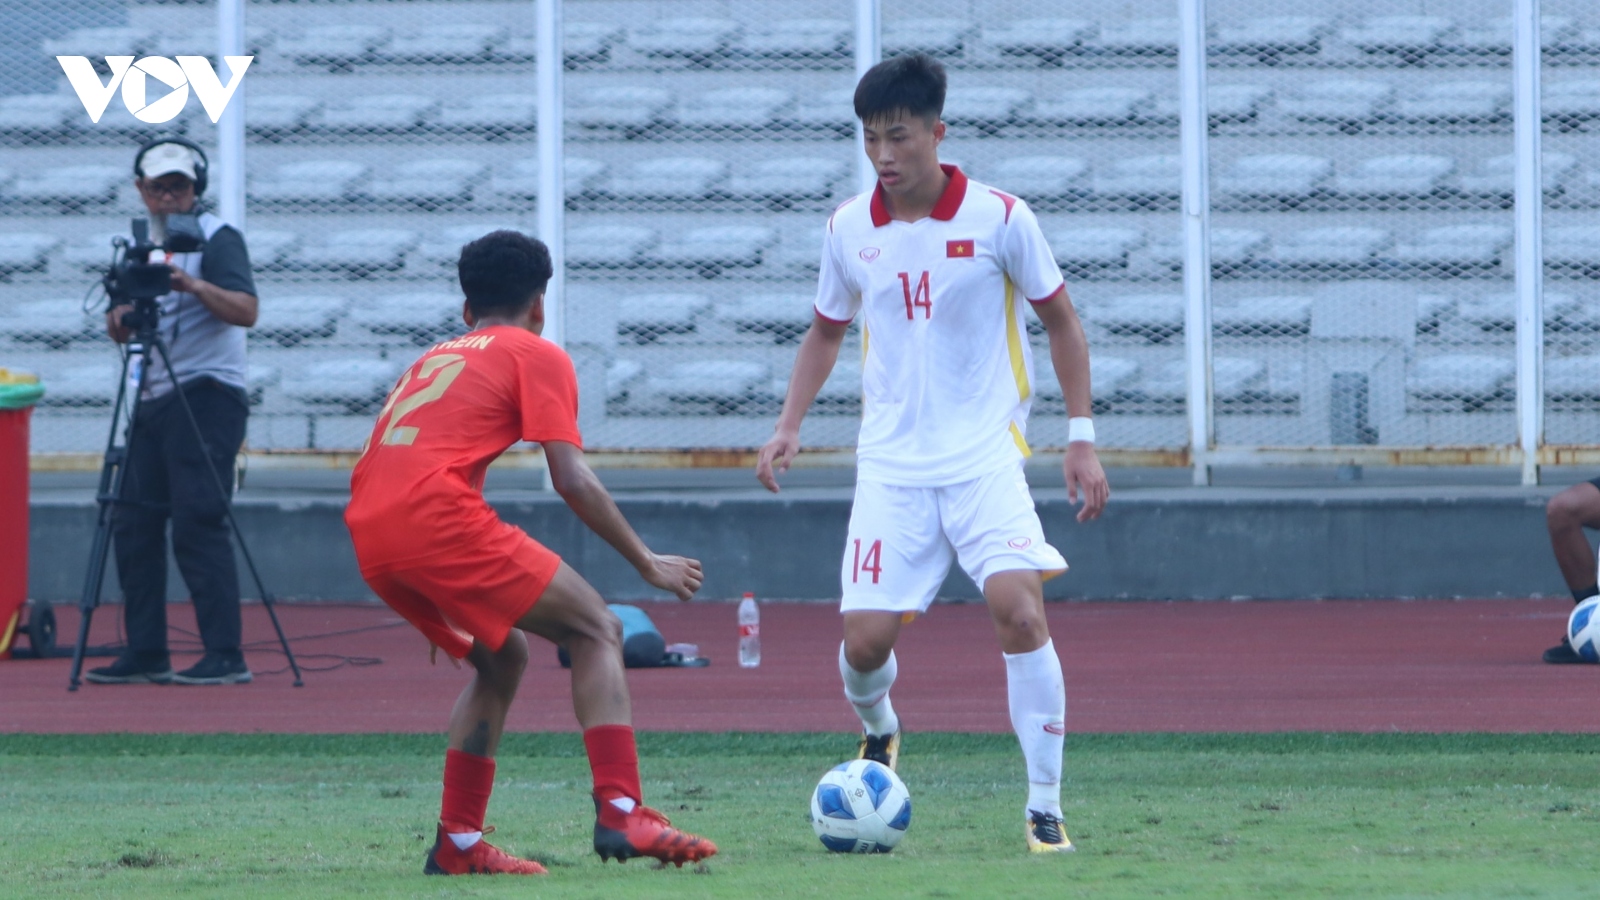 HLV Đinh Thế Nam: "U19 Việt Nam sẽ có sự chuẩn bị kỹ cho trận gặp Thái Lan"